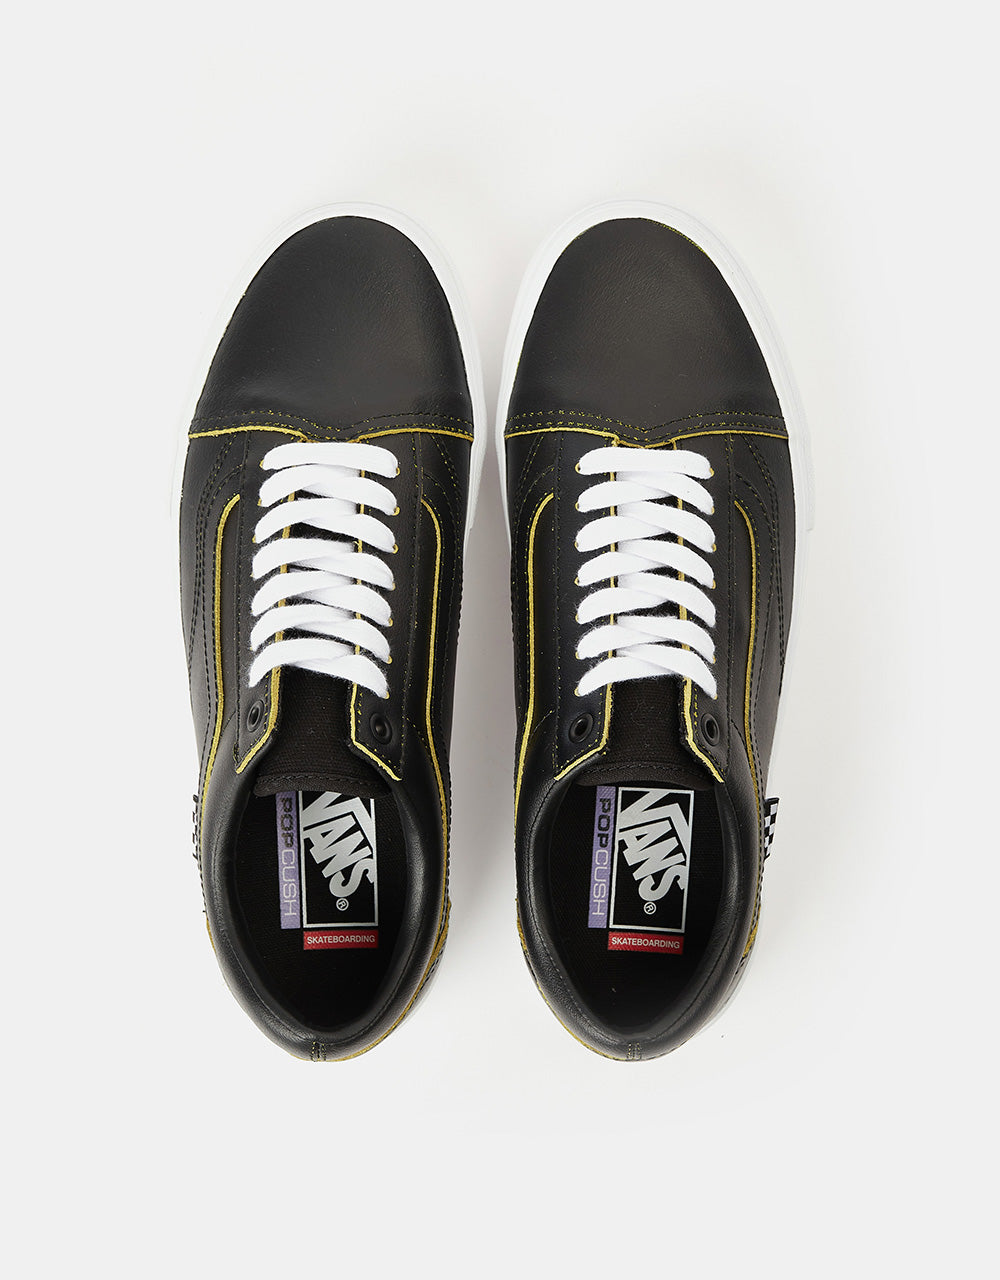 Vans Skate Old Skool R1 UK Exclusive Skate Shoes - (Wearaway) Black/True White